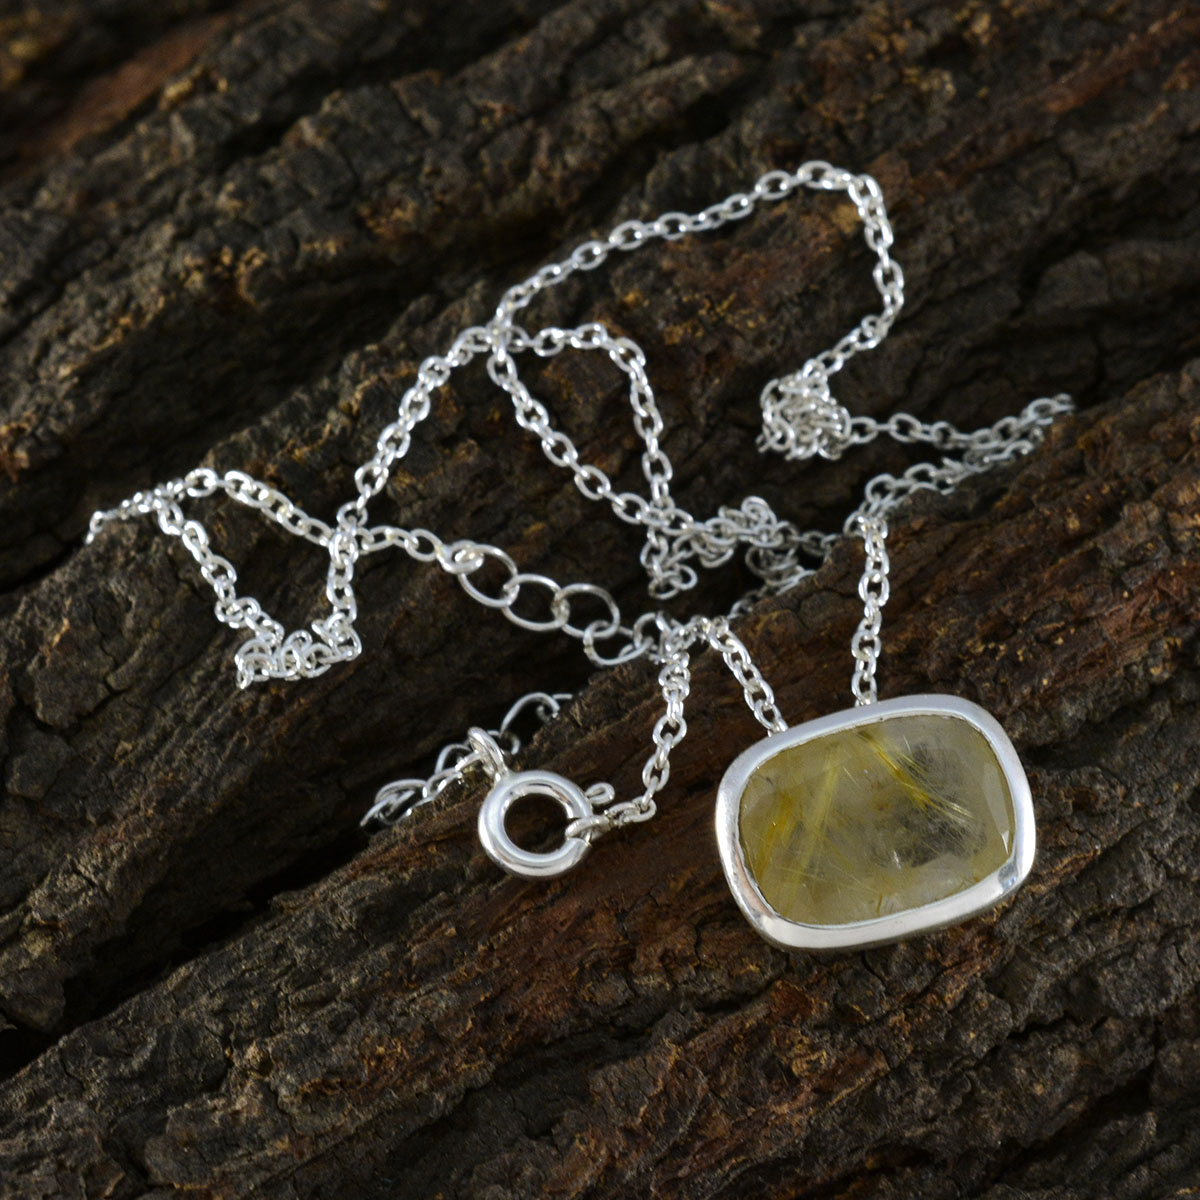 Riyo – jolies pierres précieuses octogonales à facettes, pendentif en argent à quartz multi-rutile, cadeau pour femme